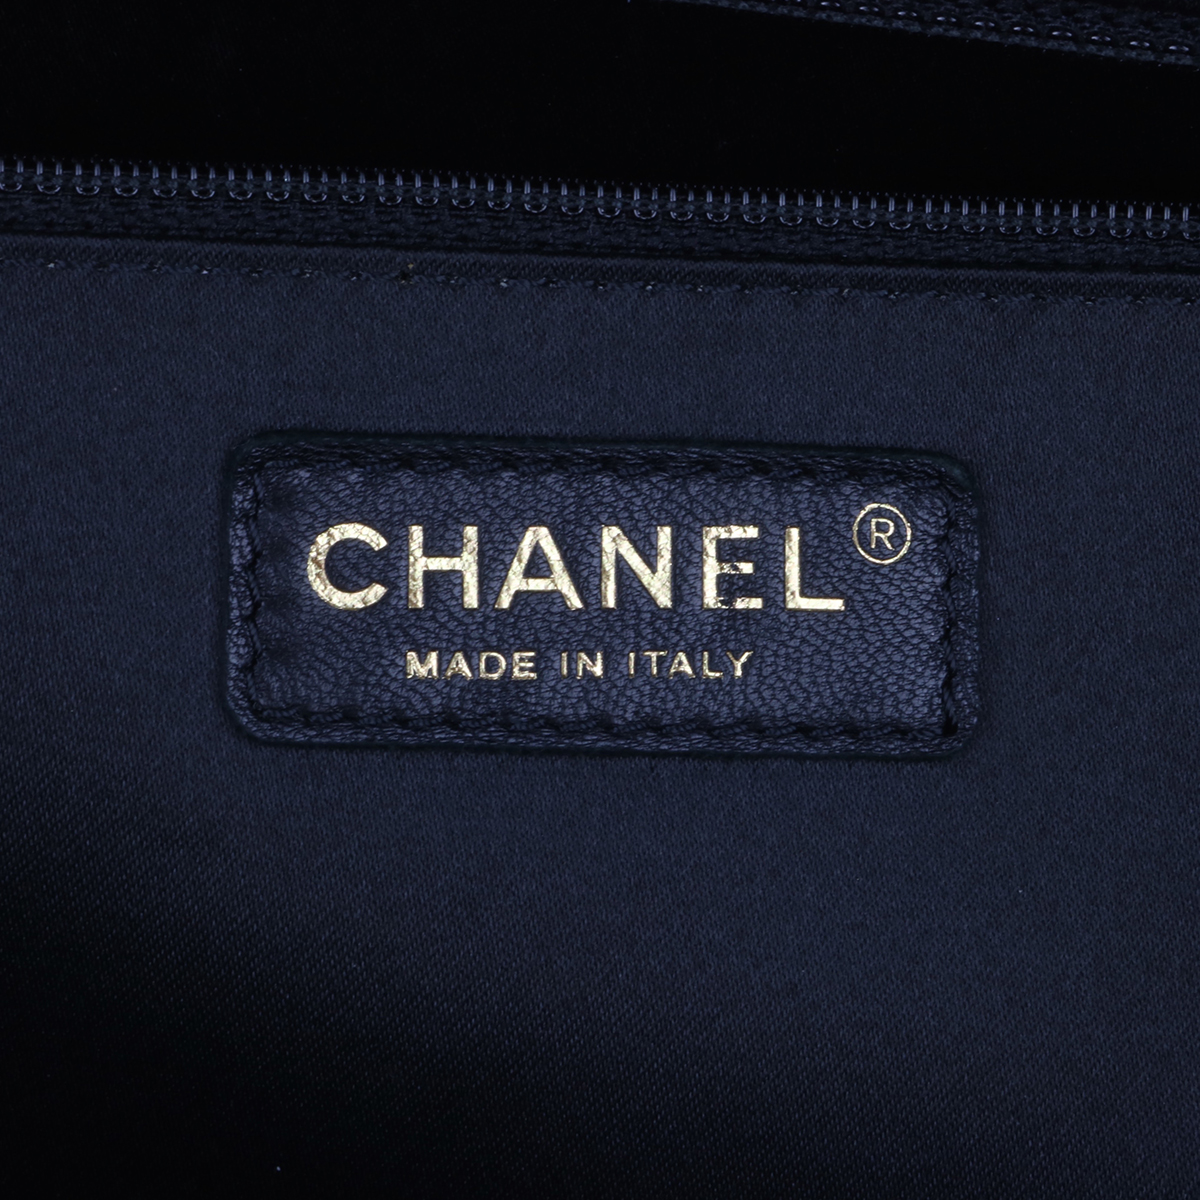 Chanel Black Caviar XL GST Grand Shopper Shopping Tote Bag GHW